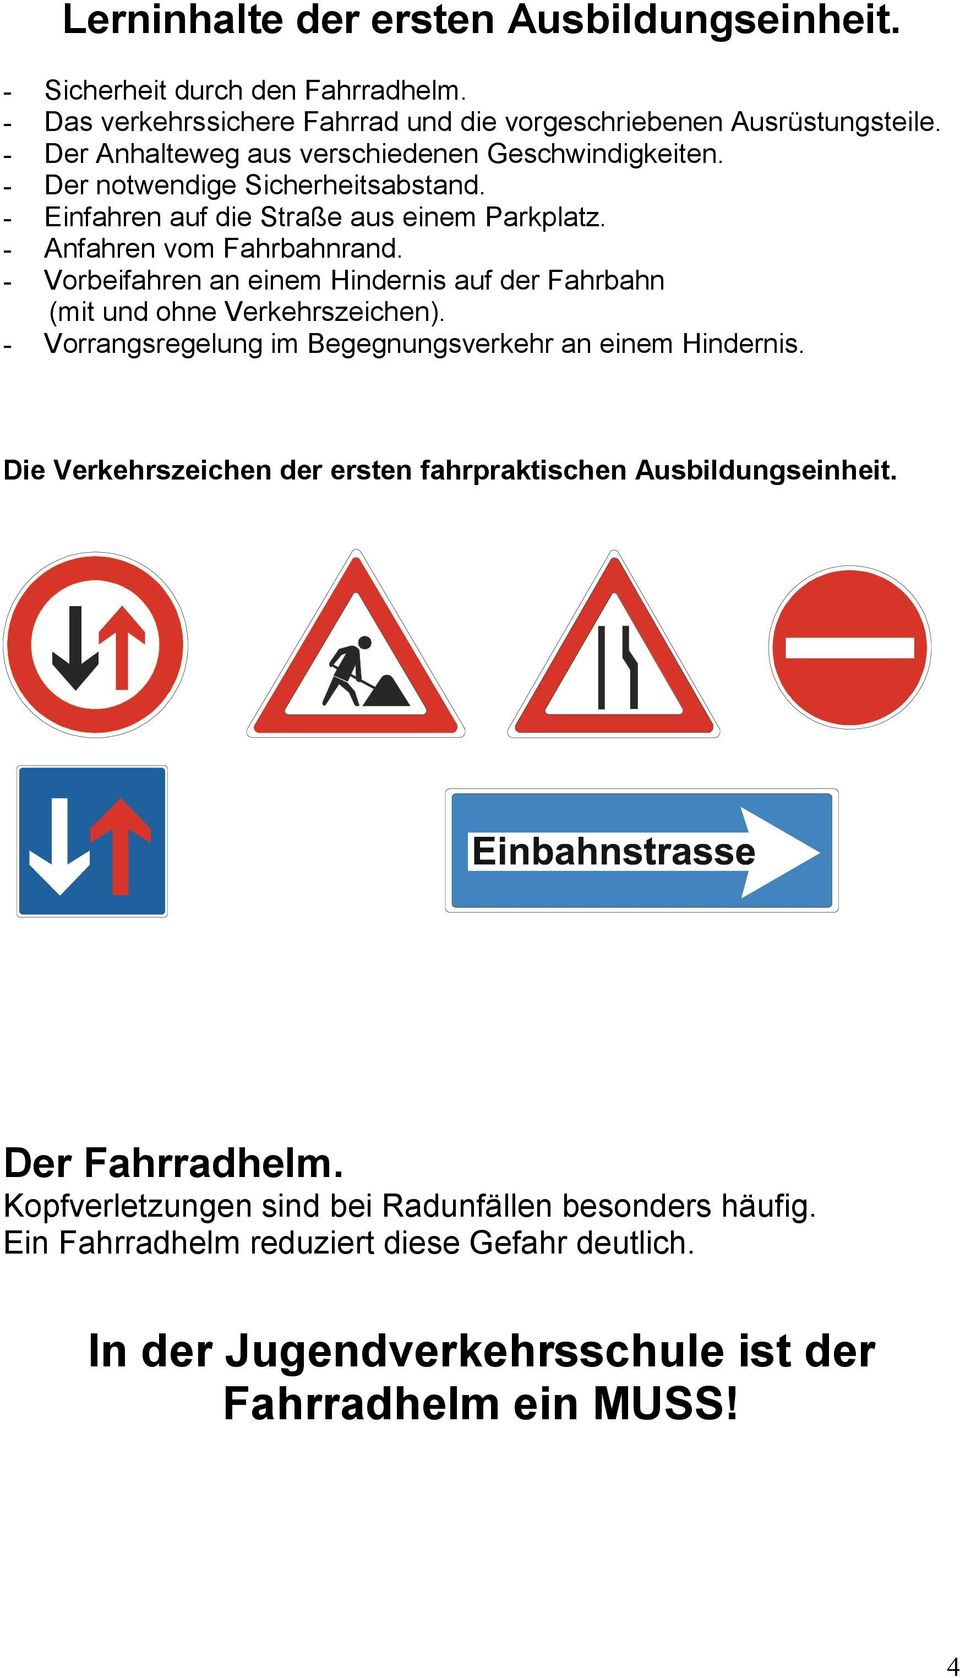 - Vorbeifahren an einem Hindernis auf der Fahrbahn (mit und ohne Verkehrszeichen). - Vorrangsregelung im Begegnungsverkehr an einem Hindernis.